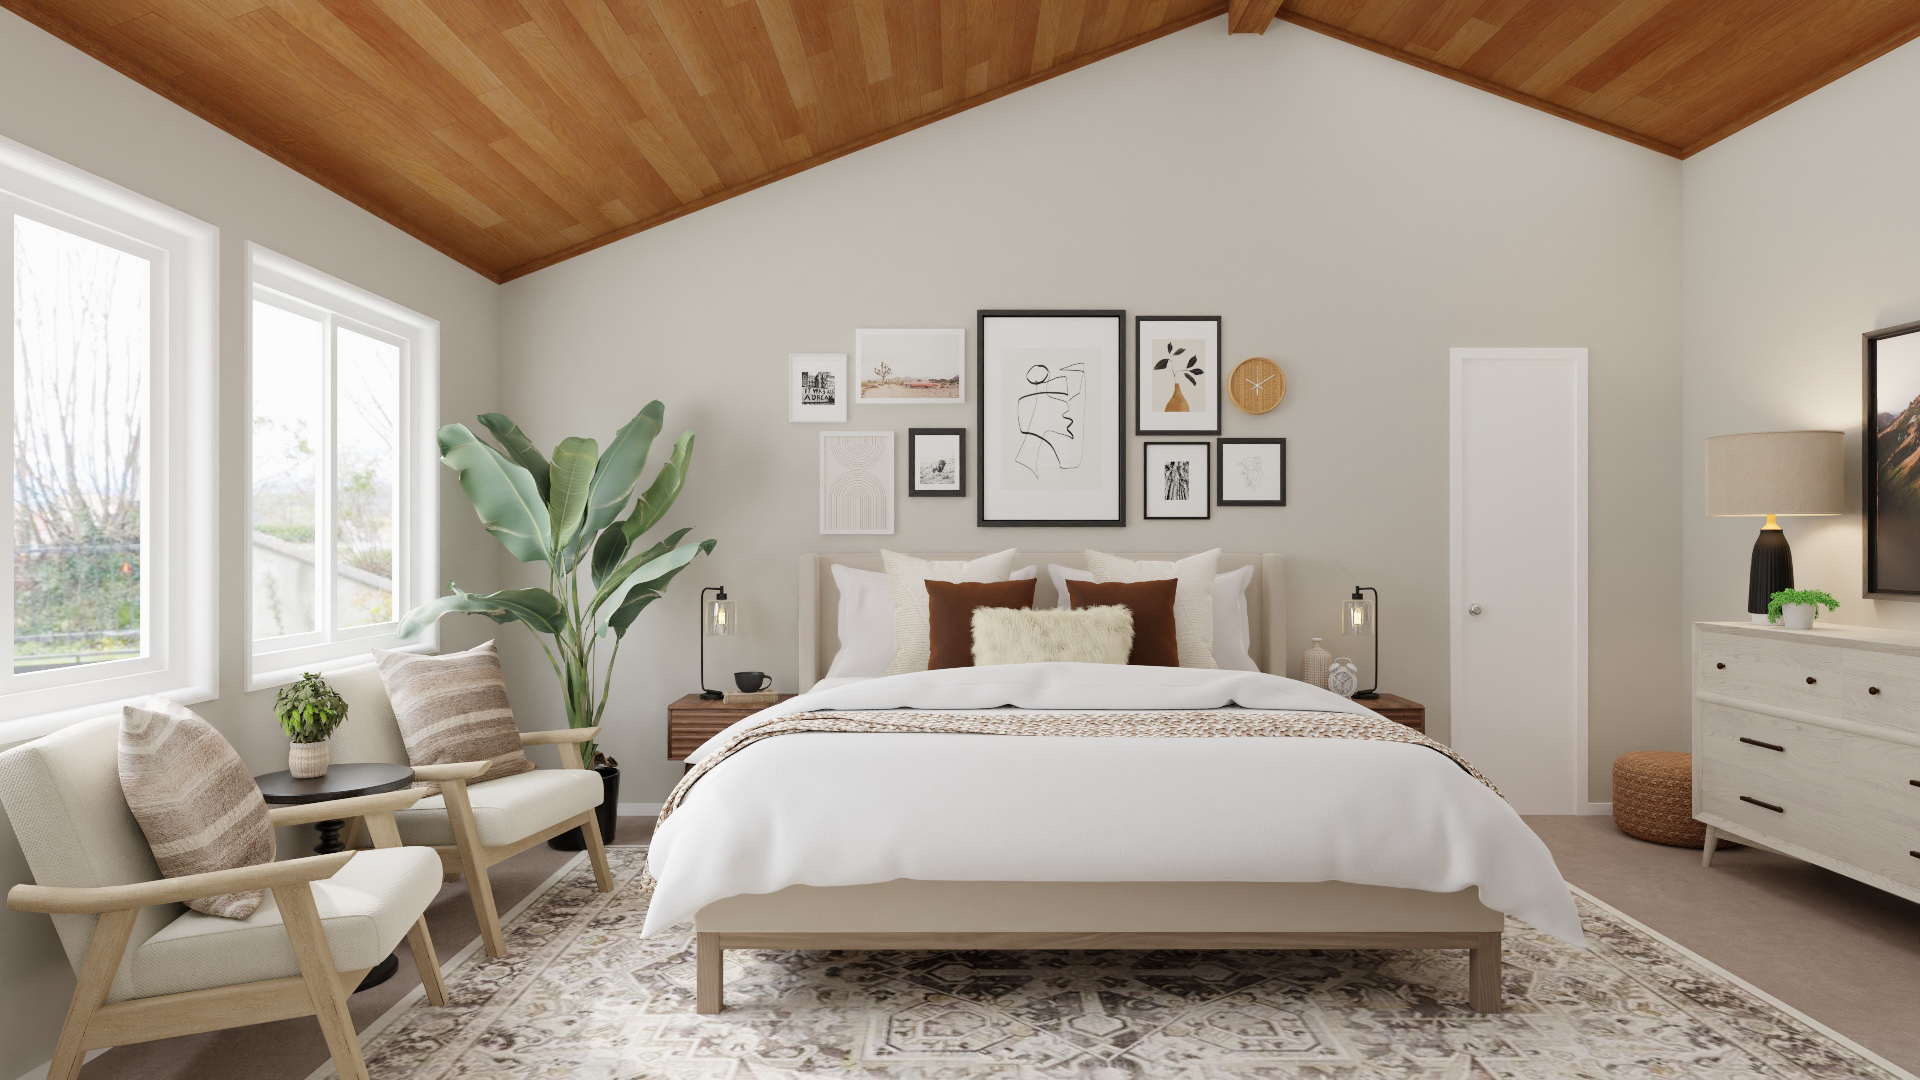 Explore Bedroom Design Ideas By Spacejoy